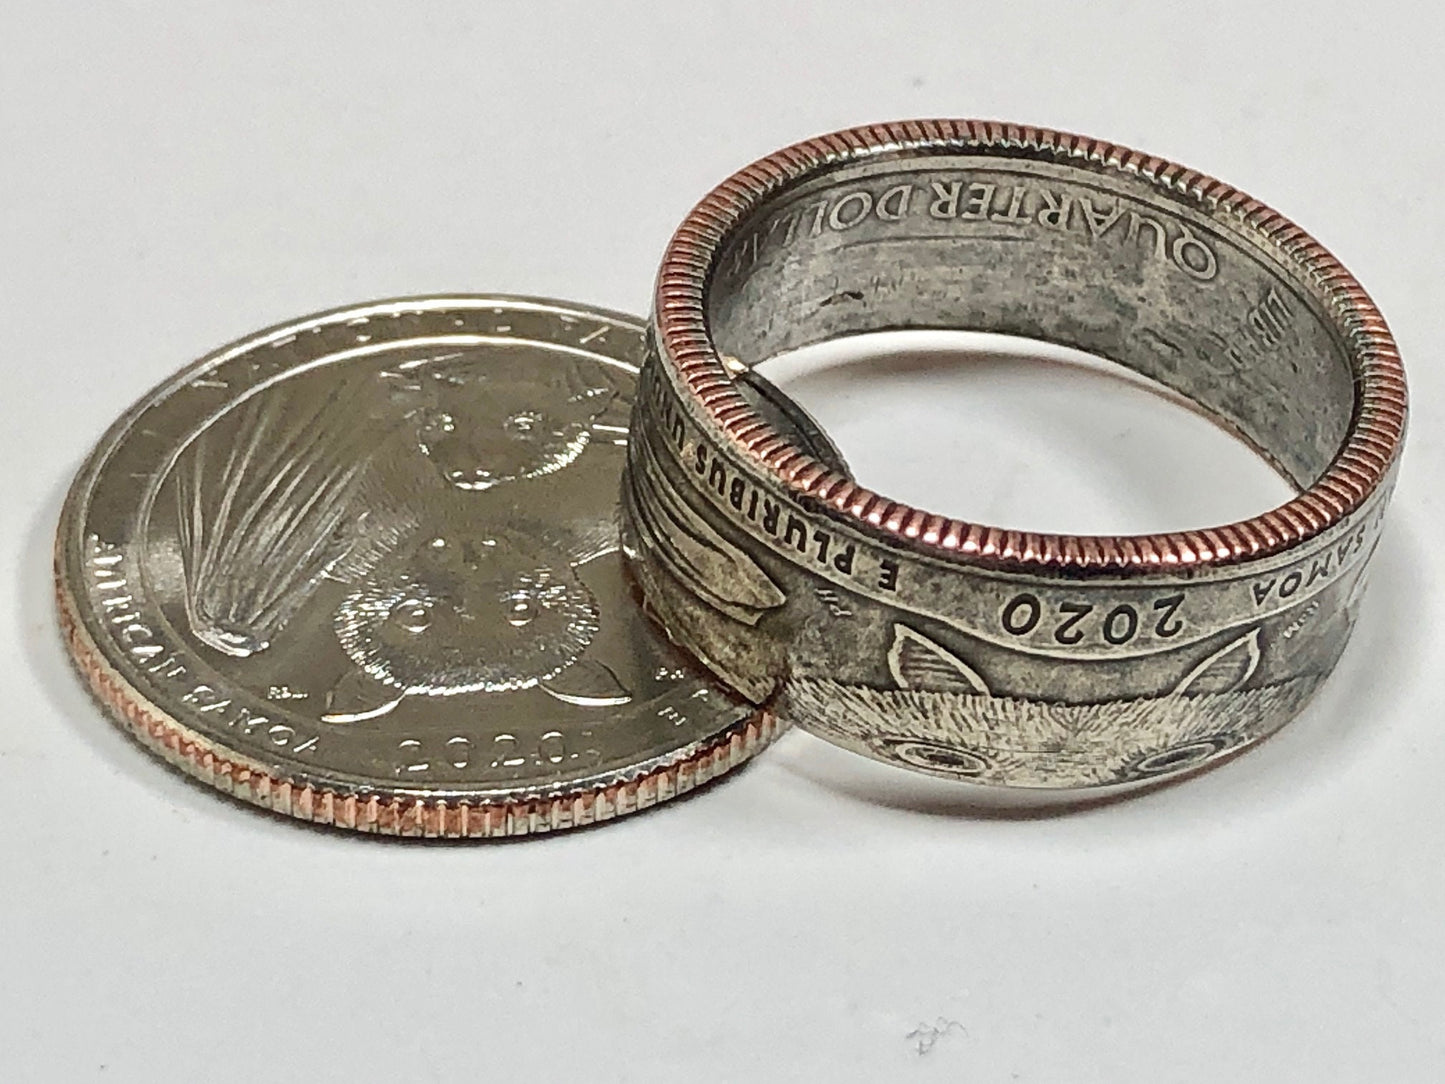 Samoa Ring American Samoa National Park Quarter Coin Ring